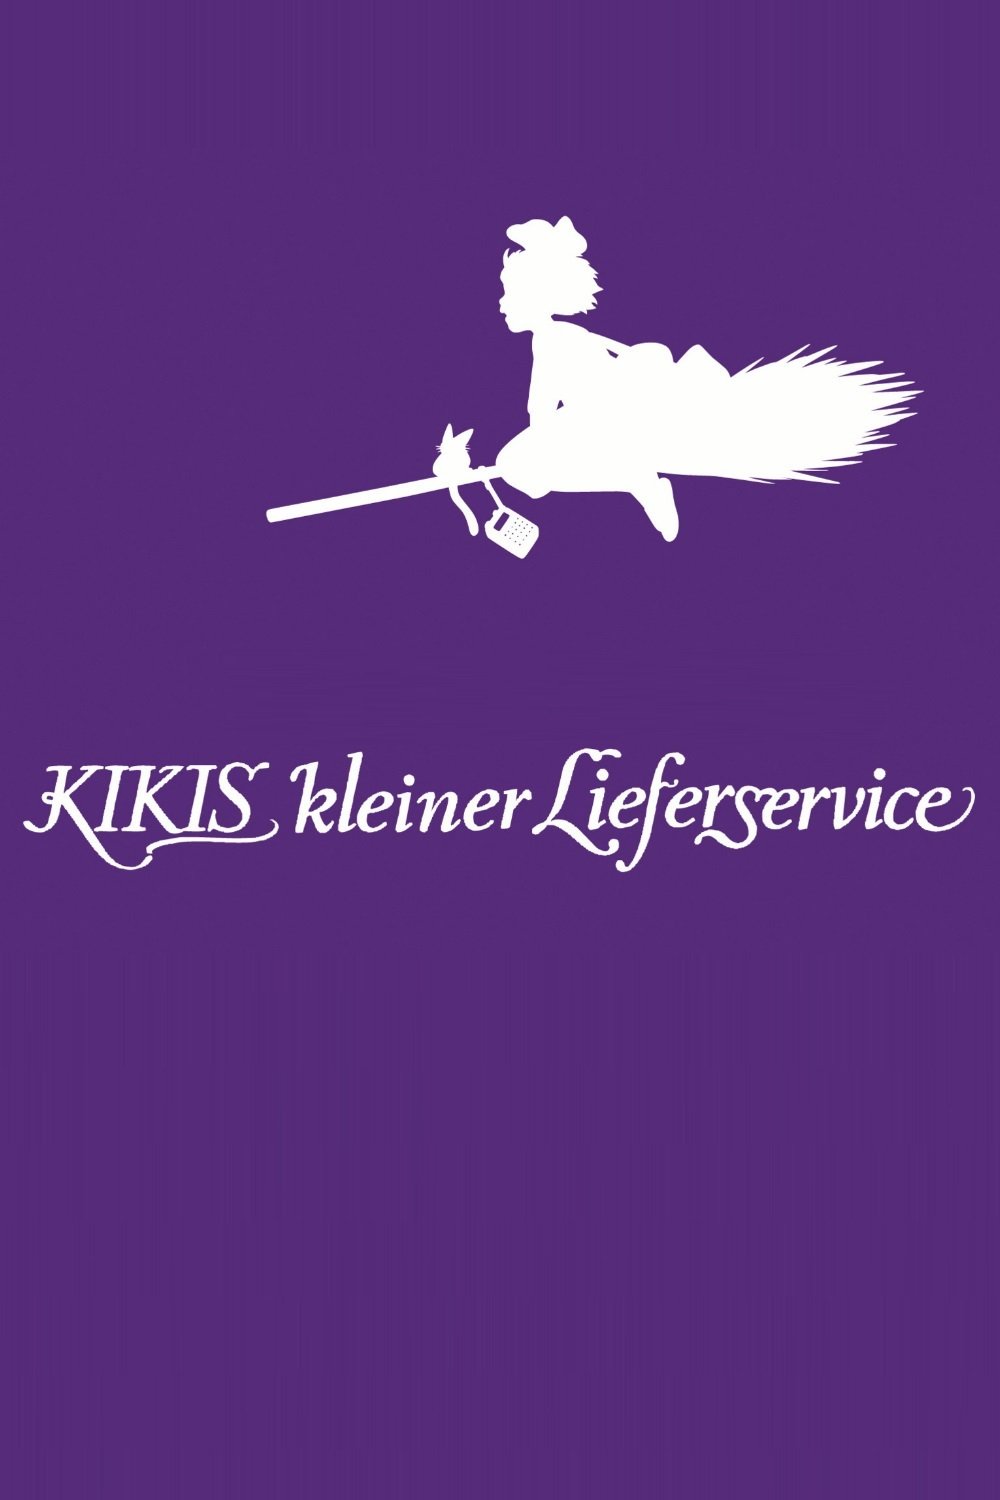 Plakat von "Kikis kleiner Lieferservice"